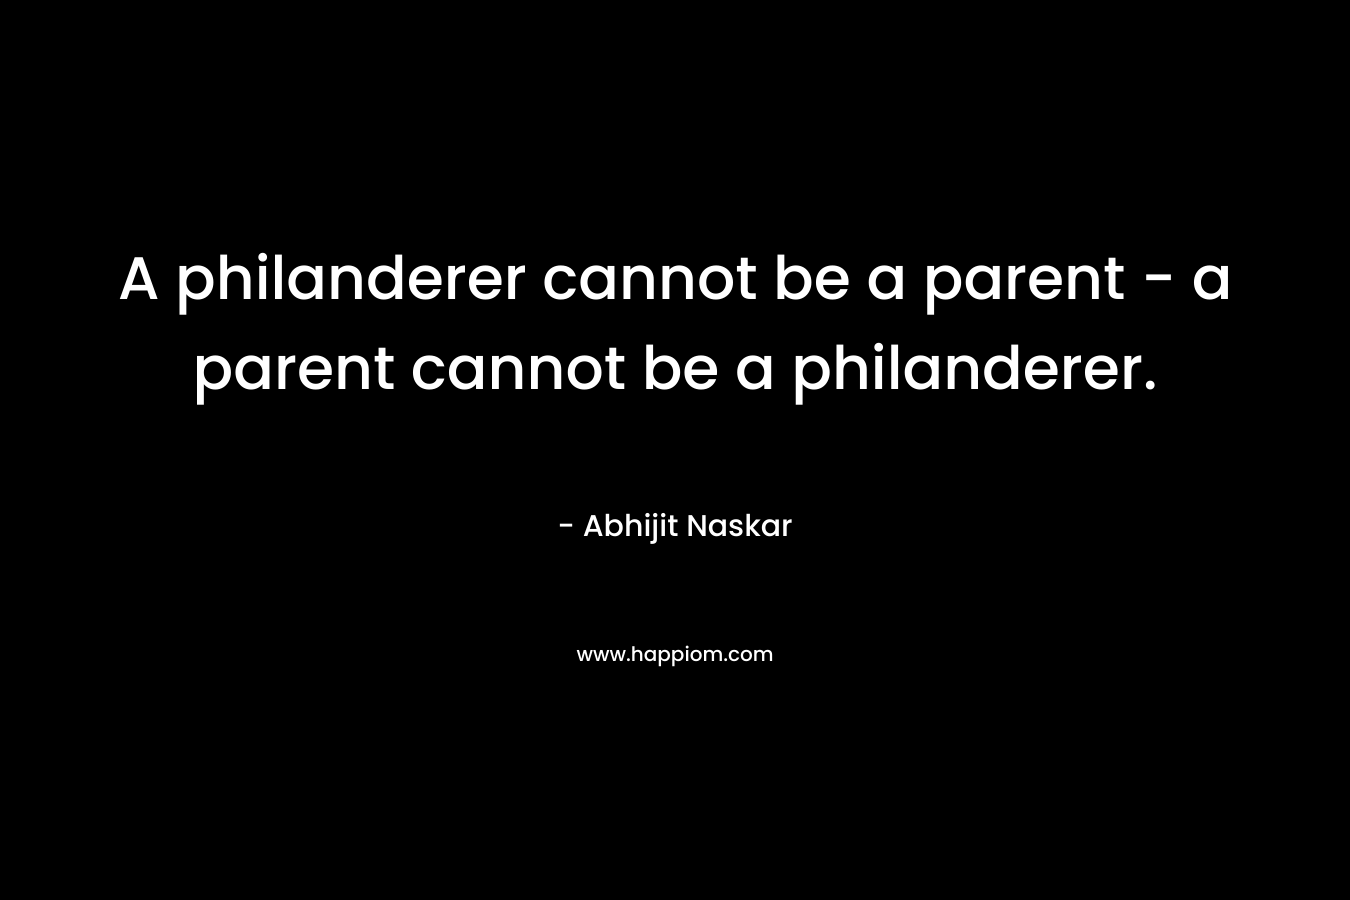 A philanderer cannot be a parent - a parent cannot be a philanderer.